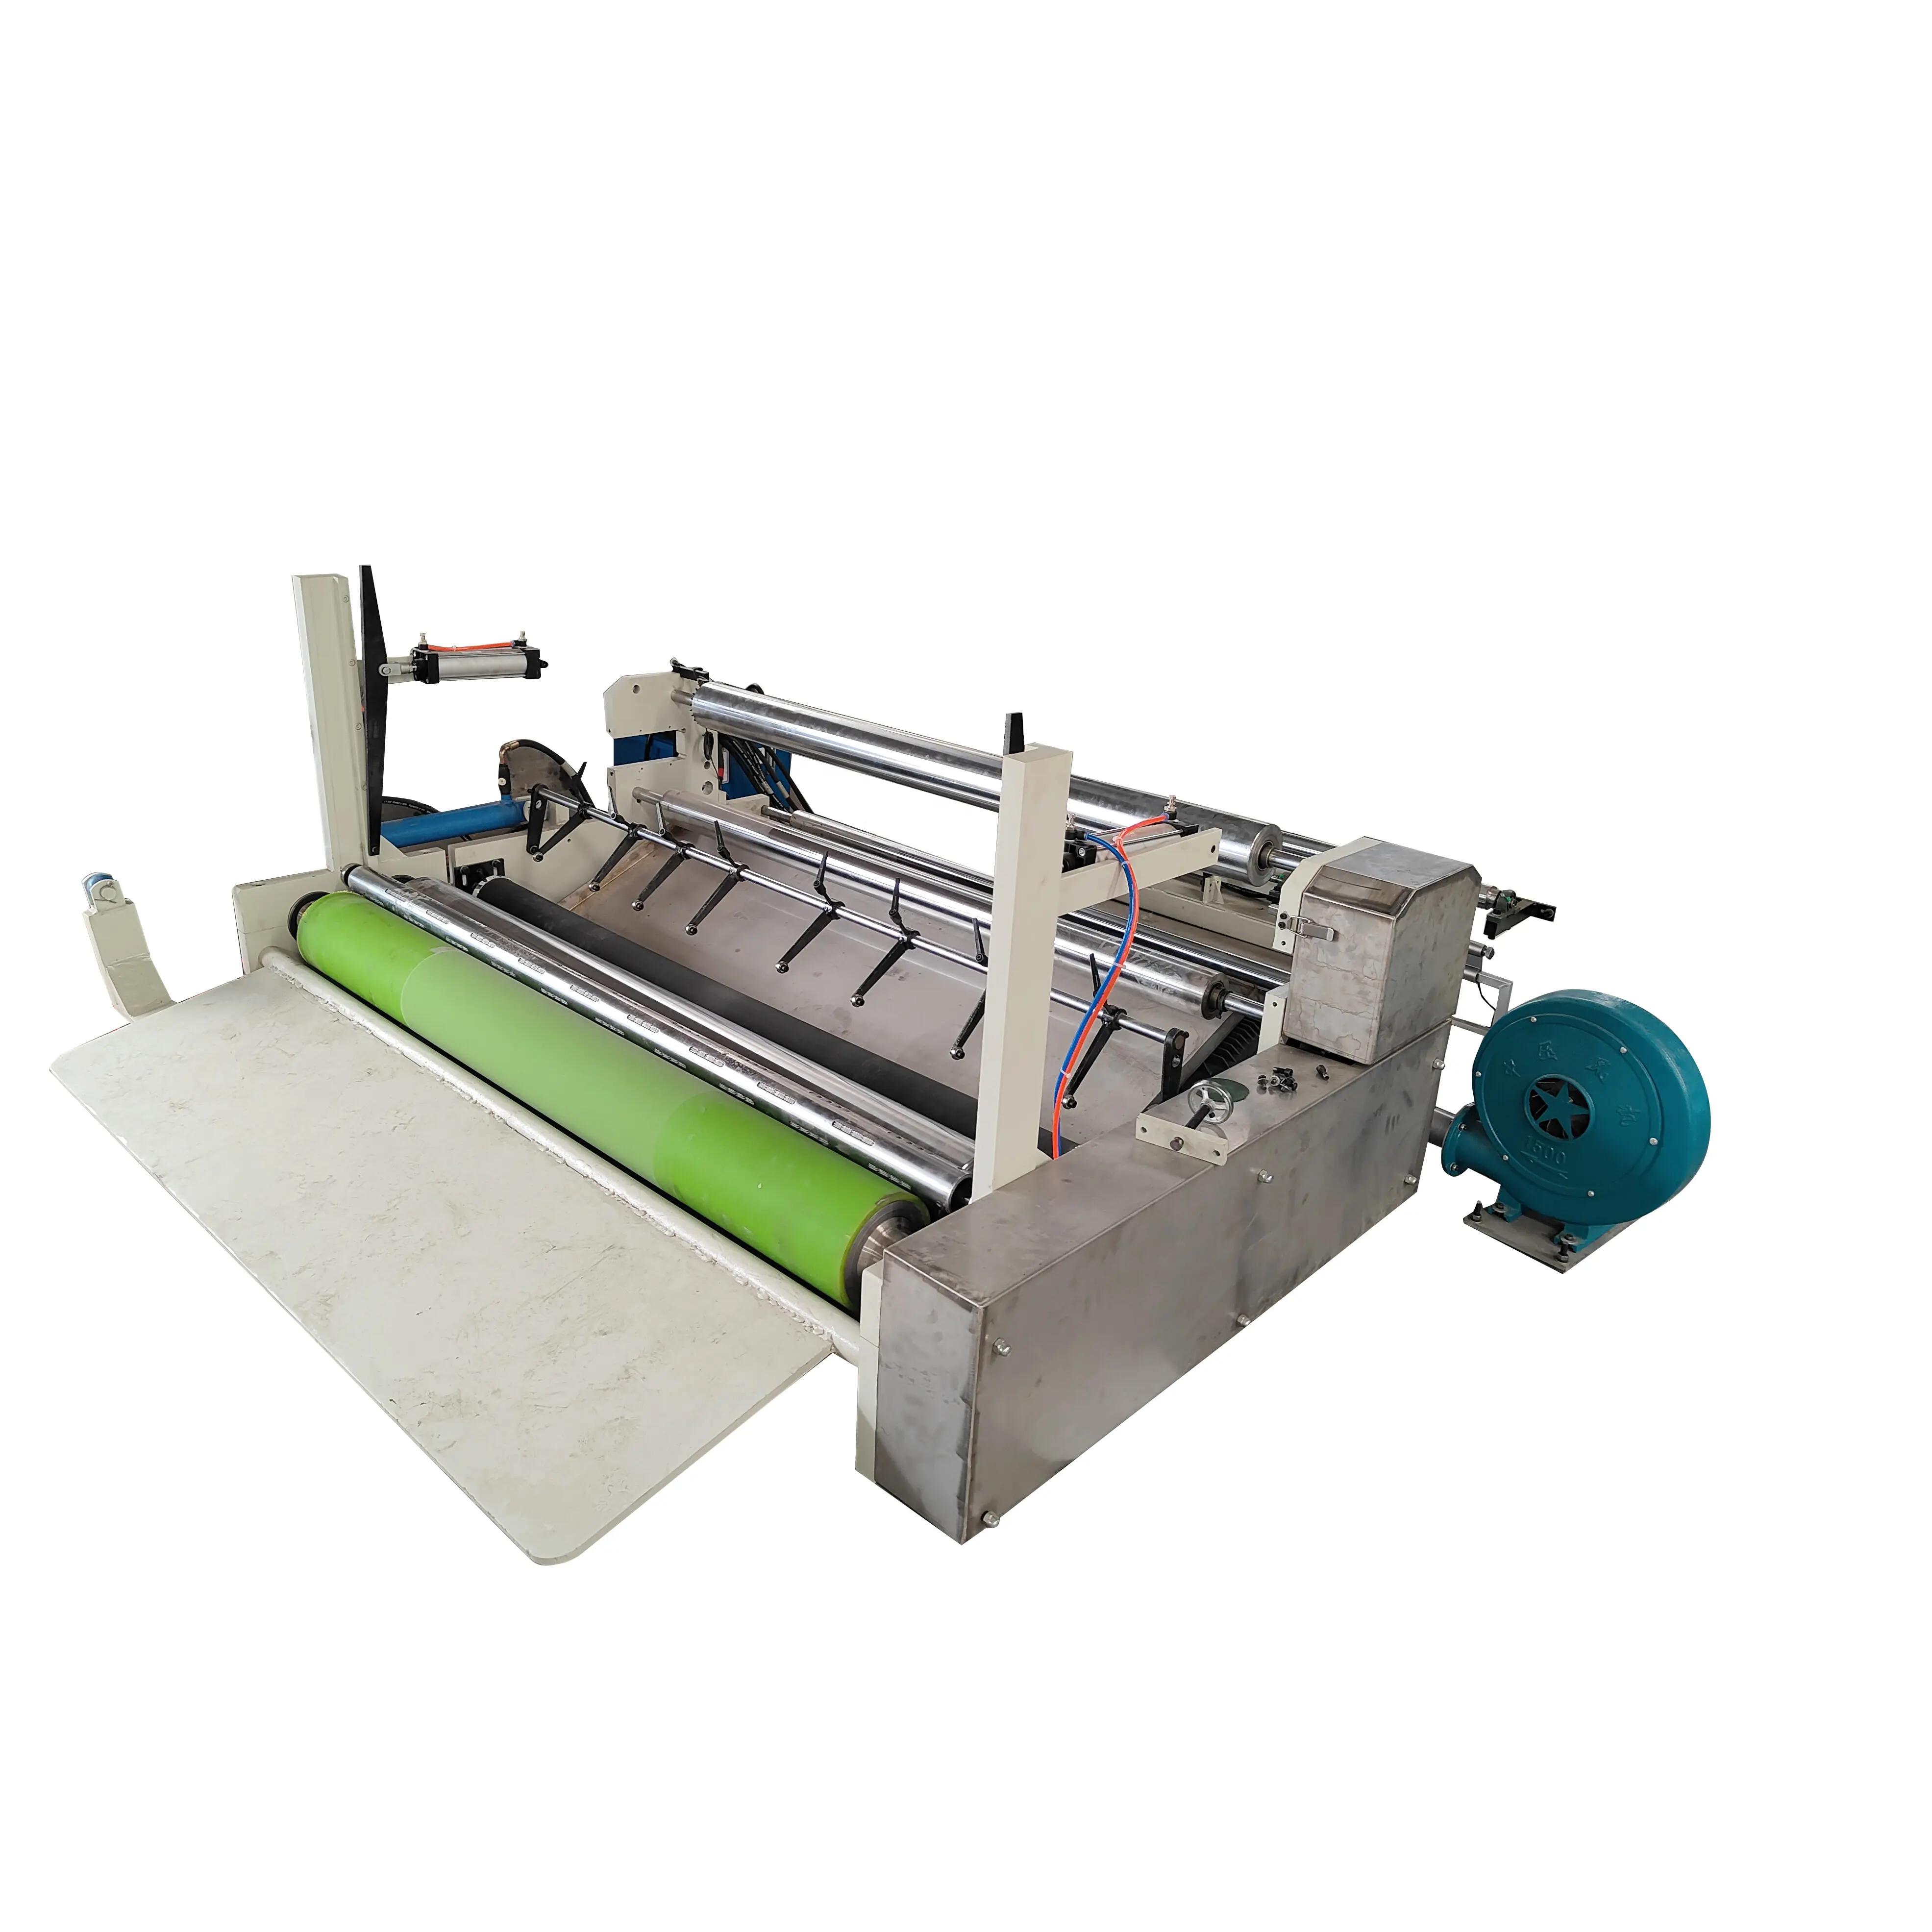 Küçük işletmeler için yüksek hızlı otomatik kağıt ürün ekipman kağıt rulosu sarıcı dilme makinesi